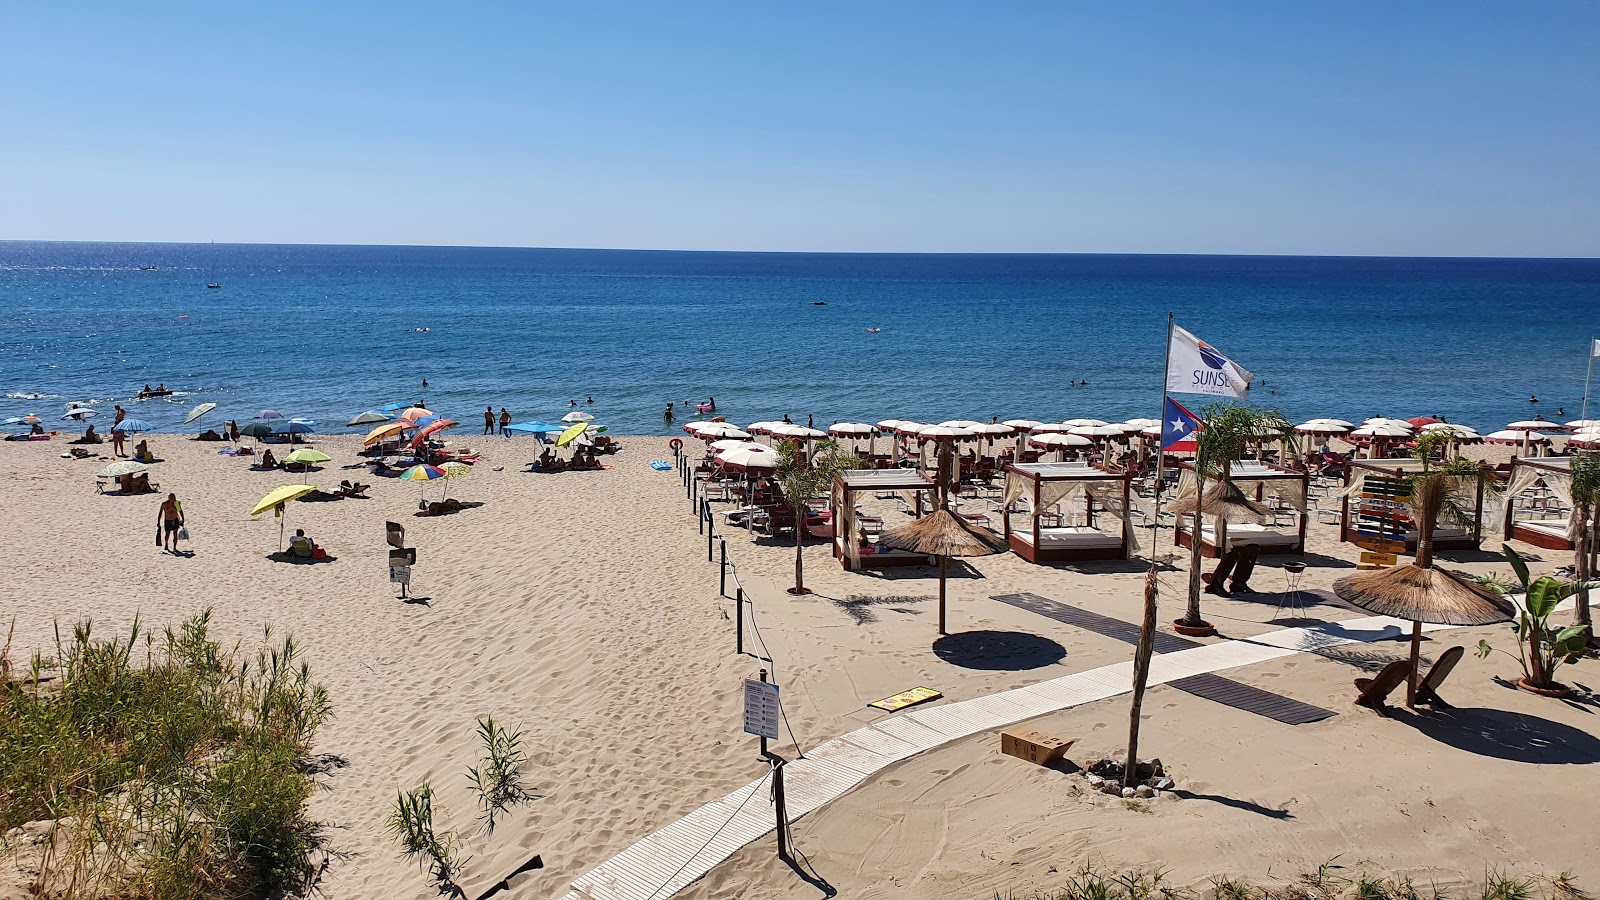 Spiaggia Le Saline II的照片 带有明亮的沙子表面